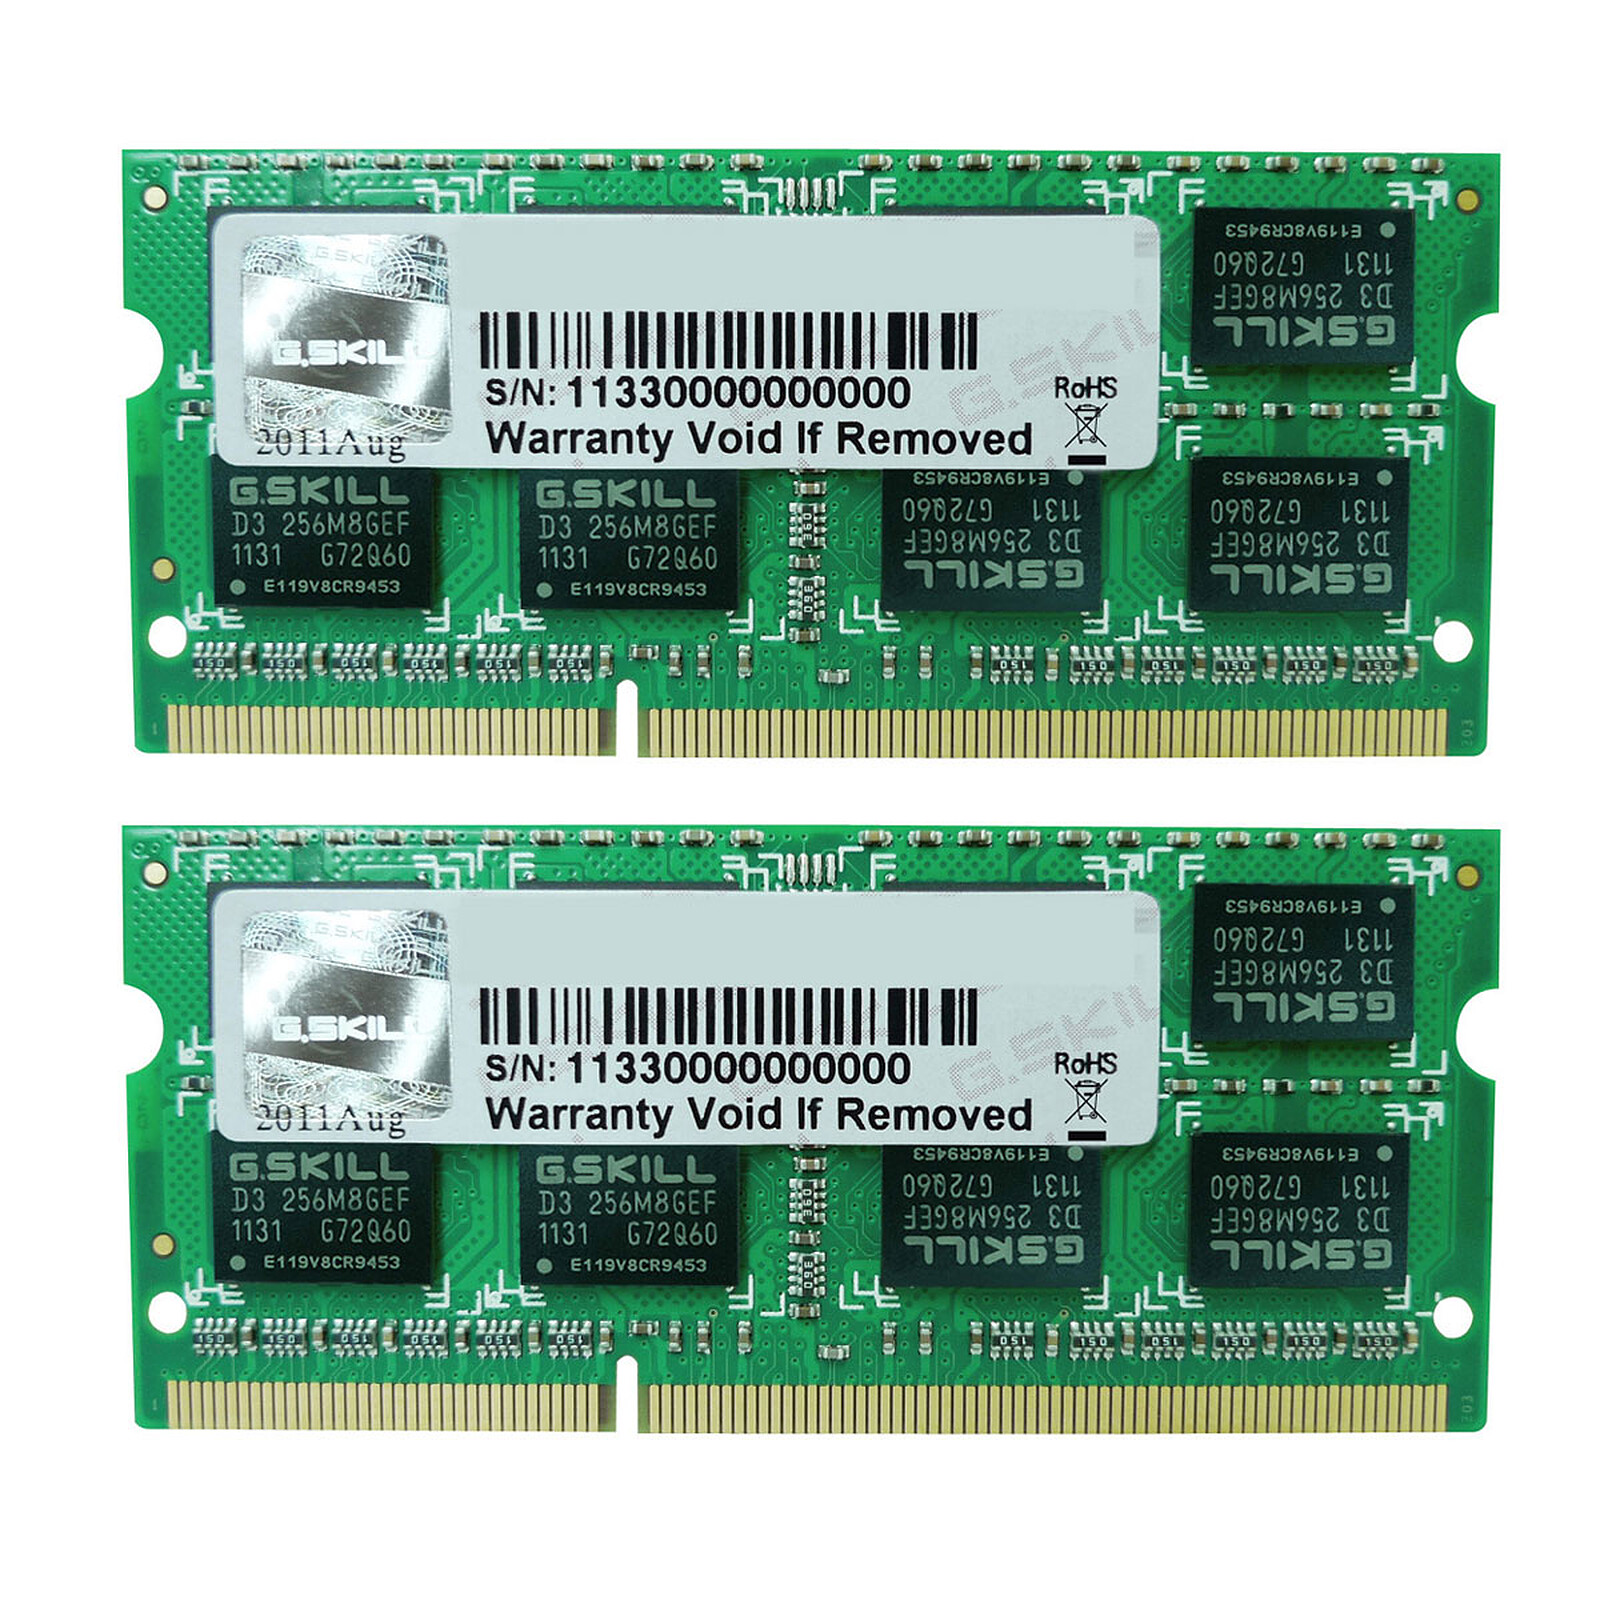 SO-DIMM GB (2 x GB) DDR3L 1600 MHz CL9 PC RAM on LDLC  Holy Moley